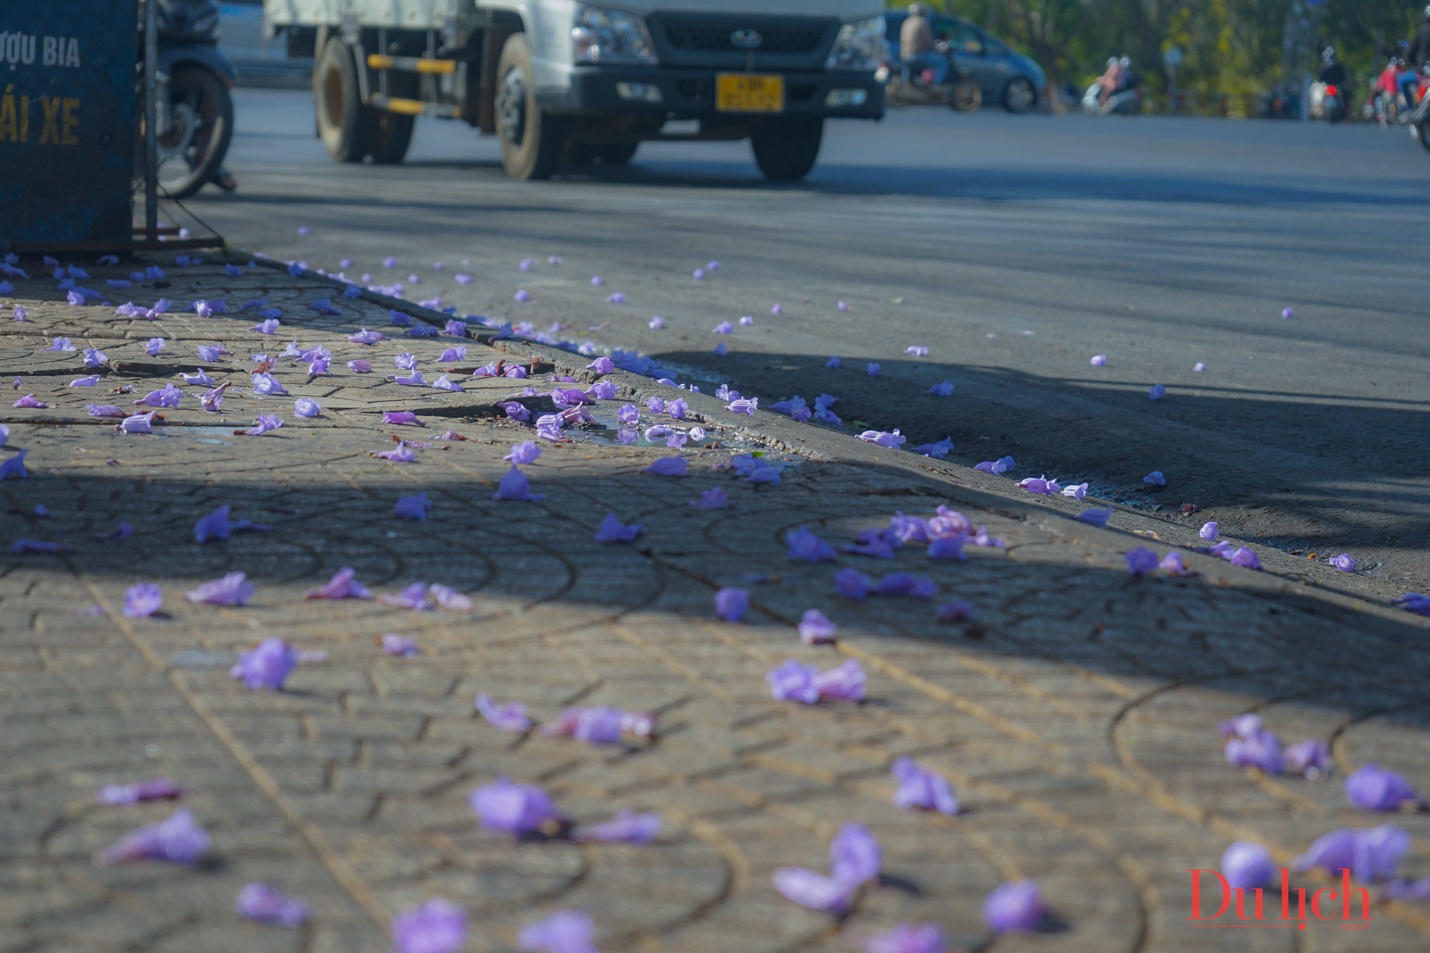 Hoa ban trắng, hoa phượng tím khoe sắc giữa phố núi Đà Lạt - 18